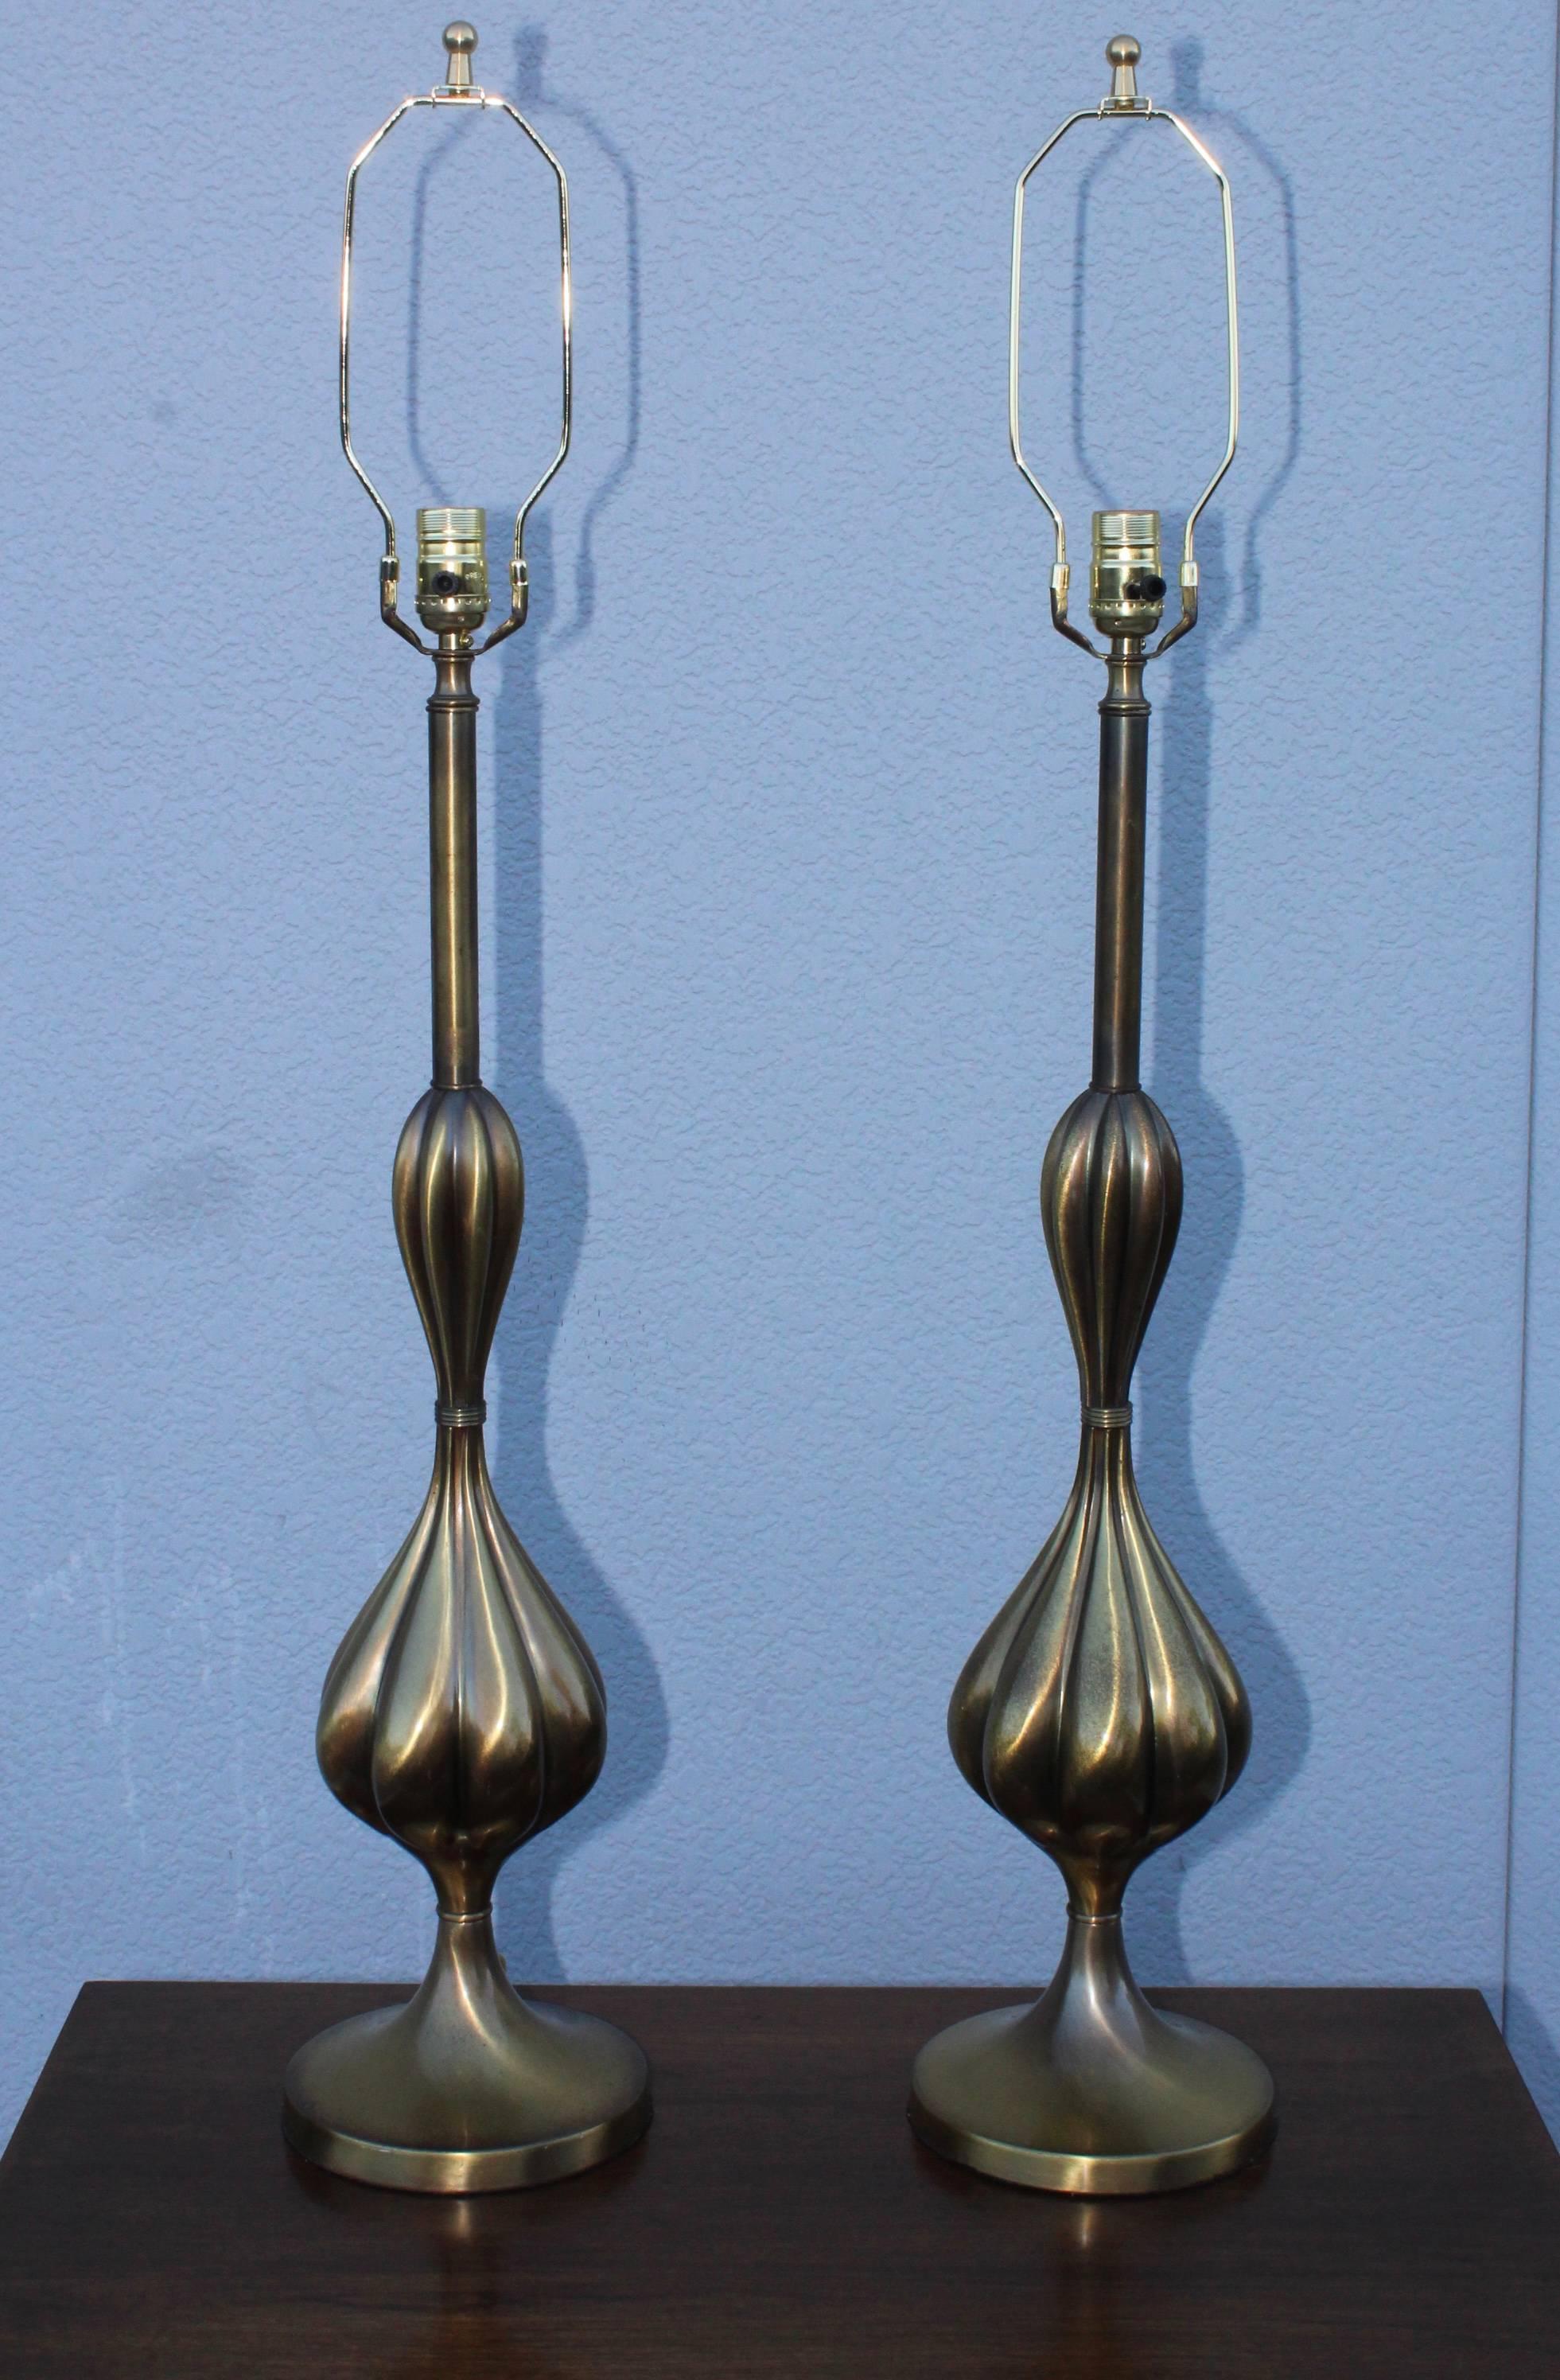 lampes de table hautes en laiton patiné des années 1950 par Stiffel.

Hauteur jusqu'à la douille 31,5.